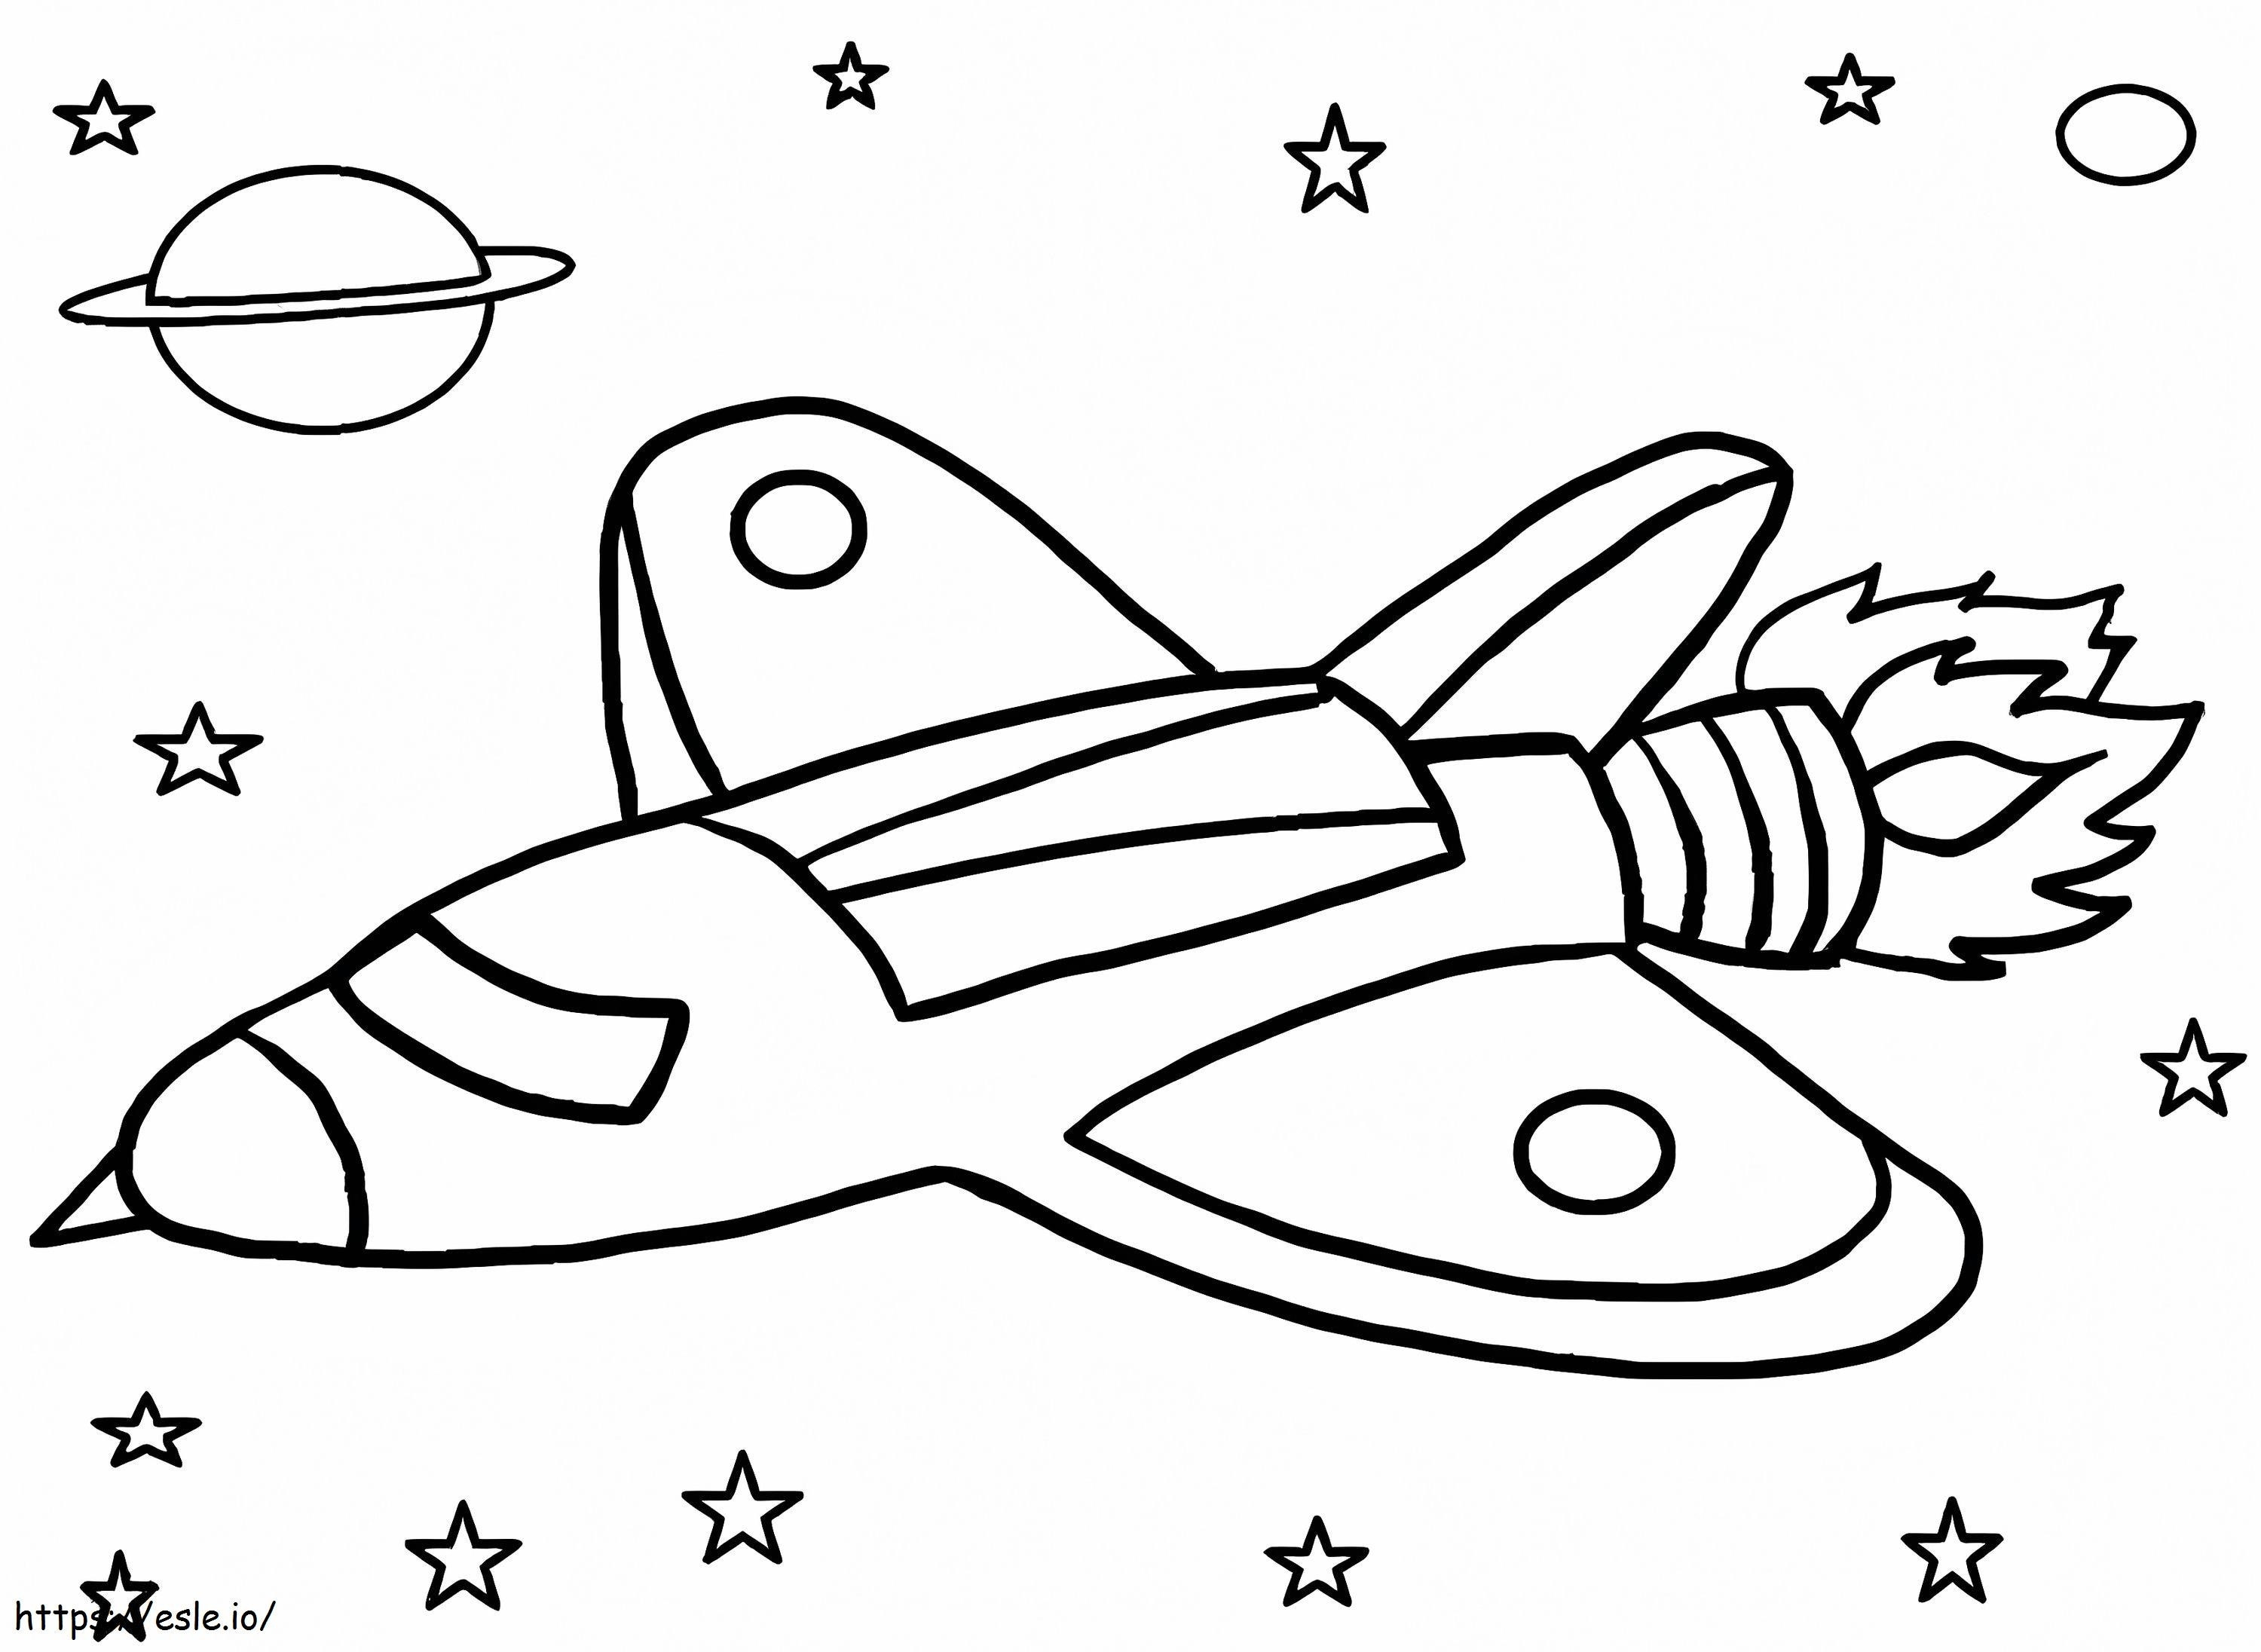 Nave espacial para crianças para colorir